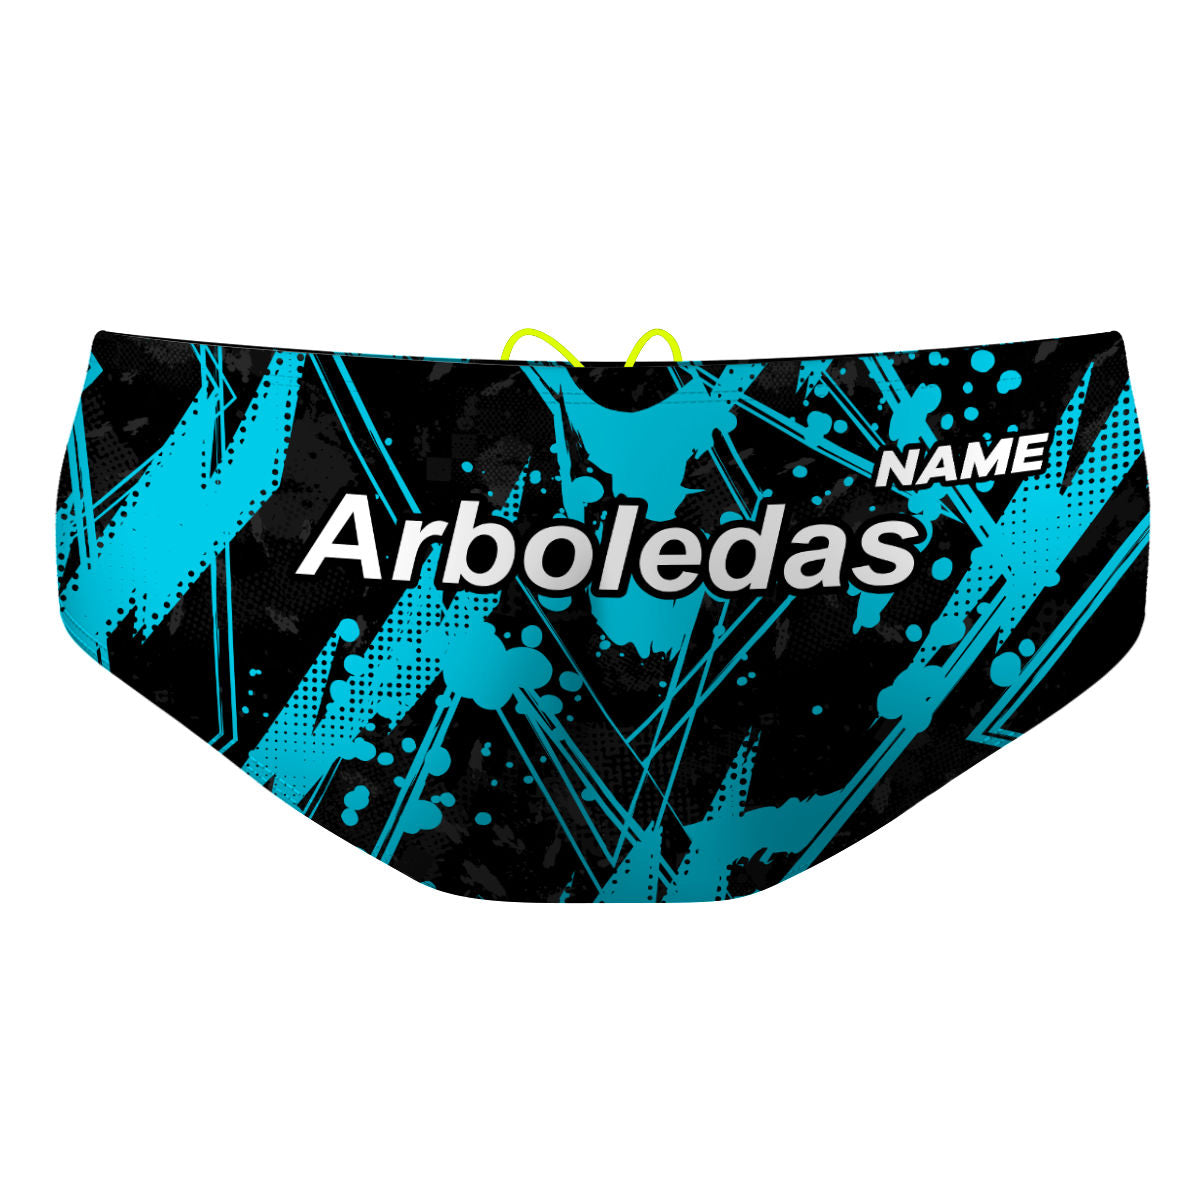 NV Arboledas - Classic Brief Swimsuit